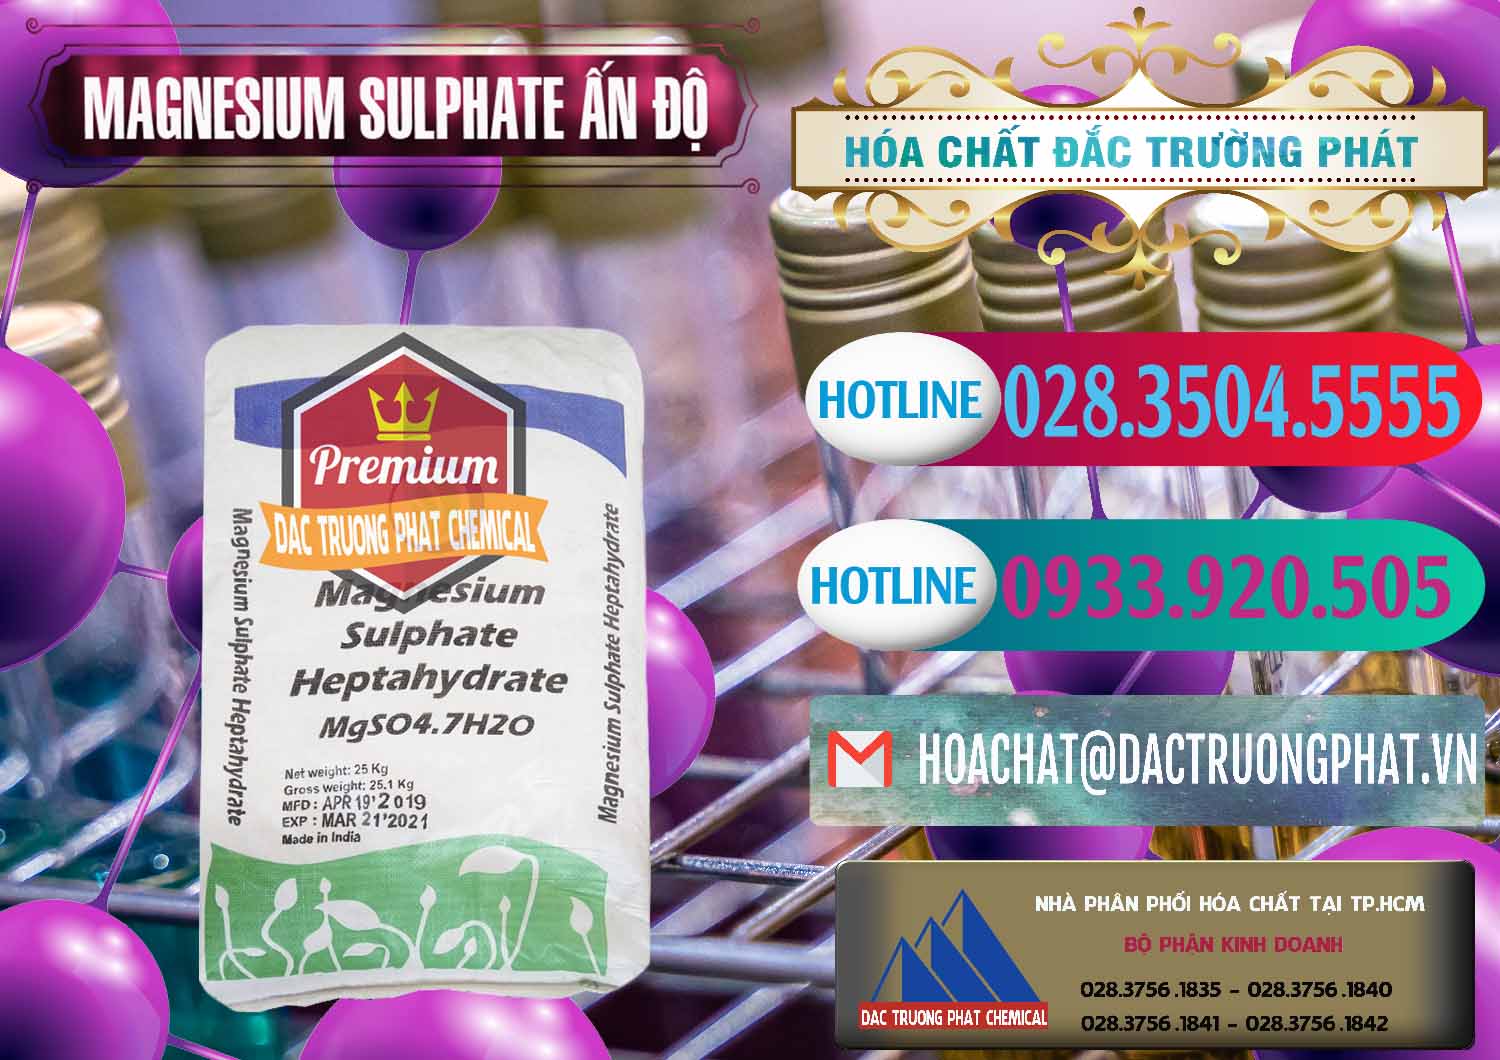 Nơi chuyên phân phối _ bán MGSO4.7H2O – Magnesium Sulphate Heptahydrate Ấn Độ India - 0362 - Nơi phân phối - cung cấp hóa chất tại TP.HCM - truongphat.vn